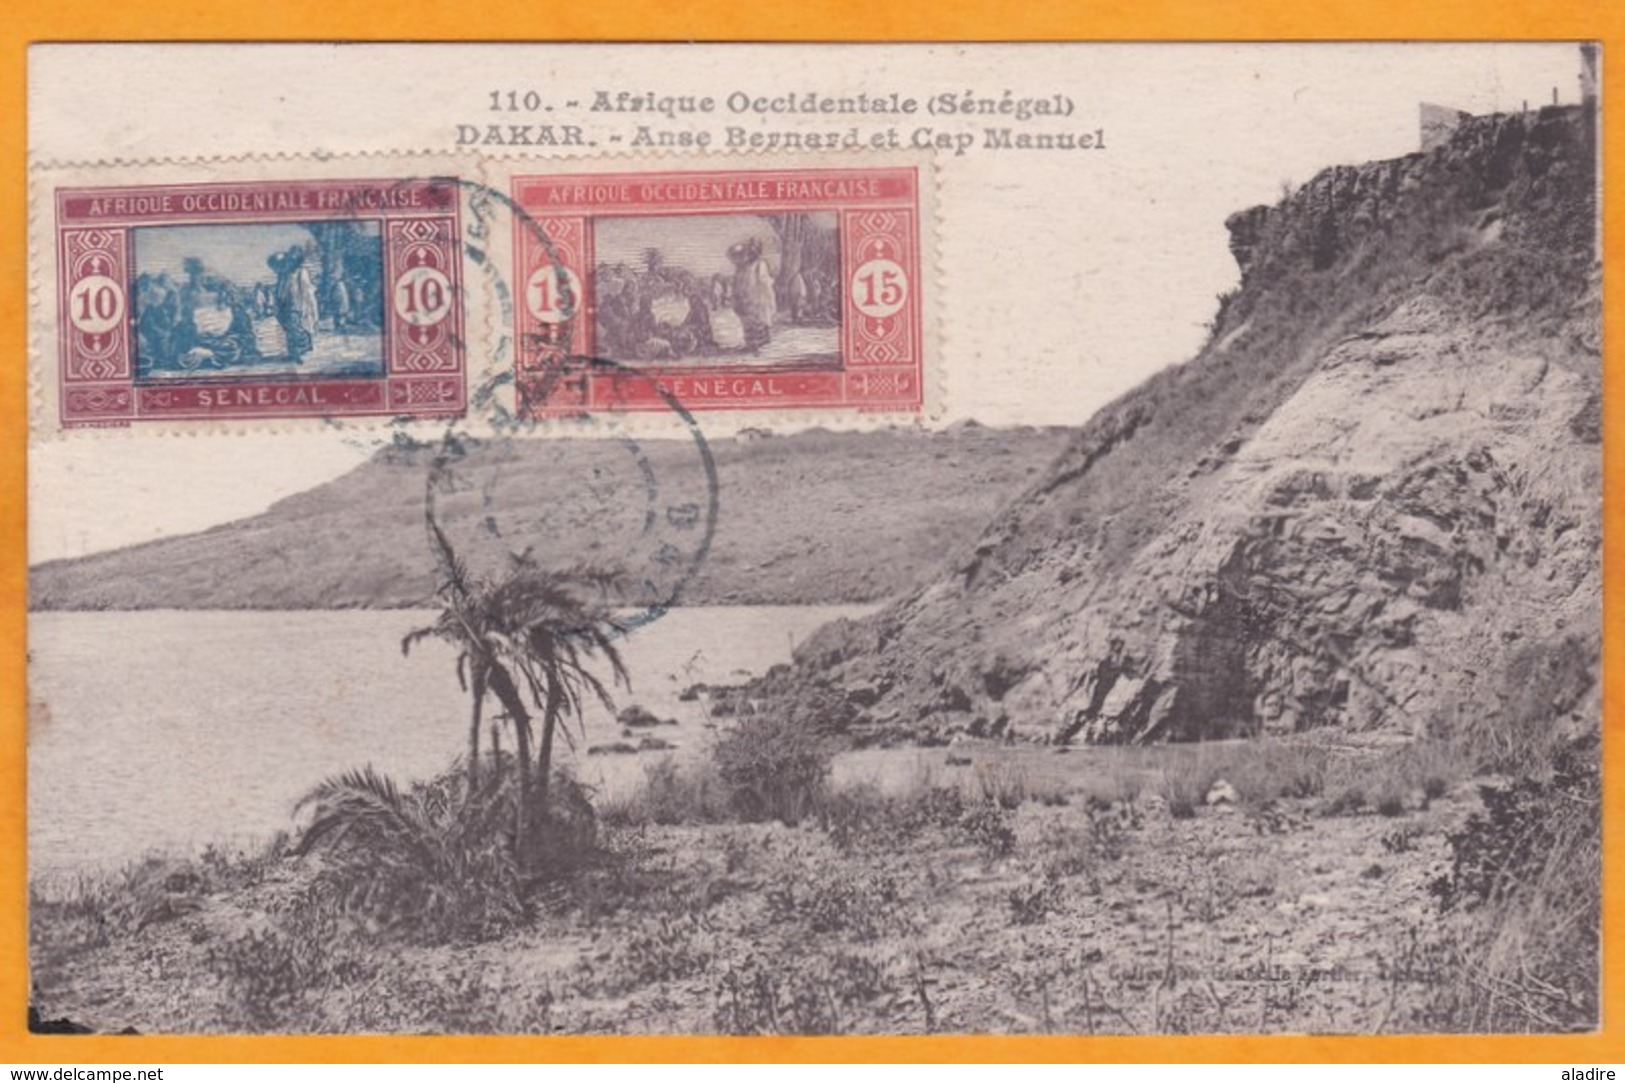 1915 - Carte Postale De Dakar, Sénégal Vers Bordeaux, France  - Affranchissement 25 C - Briefe U. Dokumente